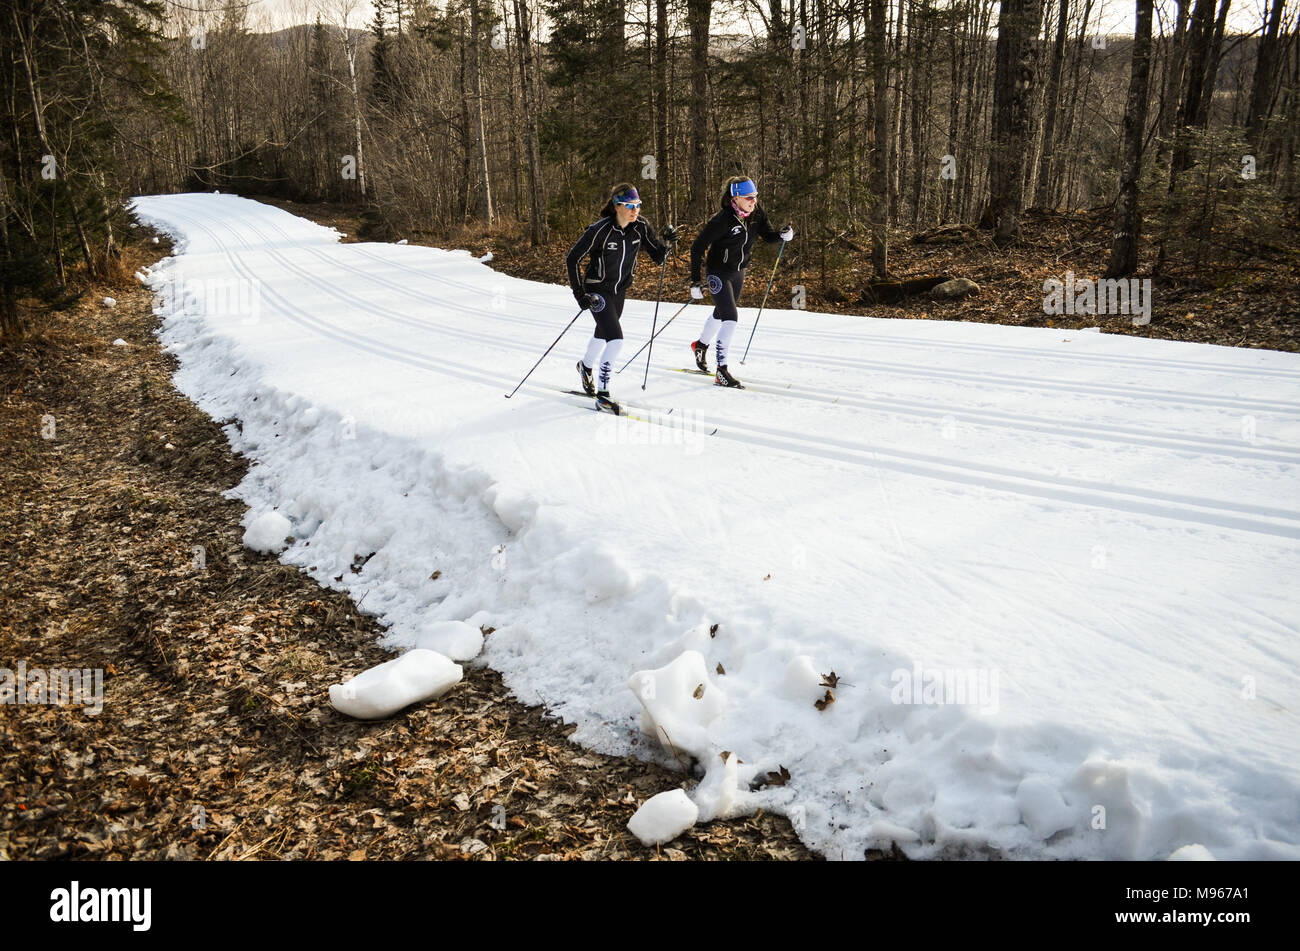 Gli amanti dello sci di fondo sci su di un nastro di neve artificiale nel nord del Vermont in marzo a Craftsbury Outdoor Center. Non c'era neve naturale. Foto Stock